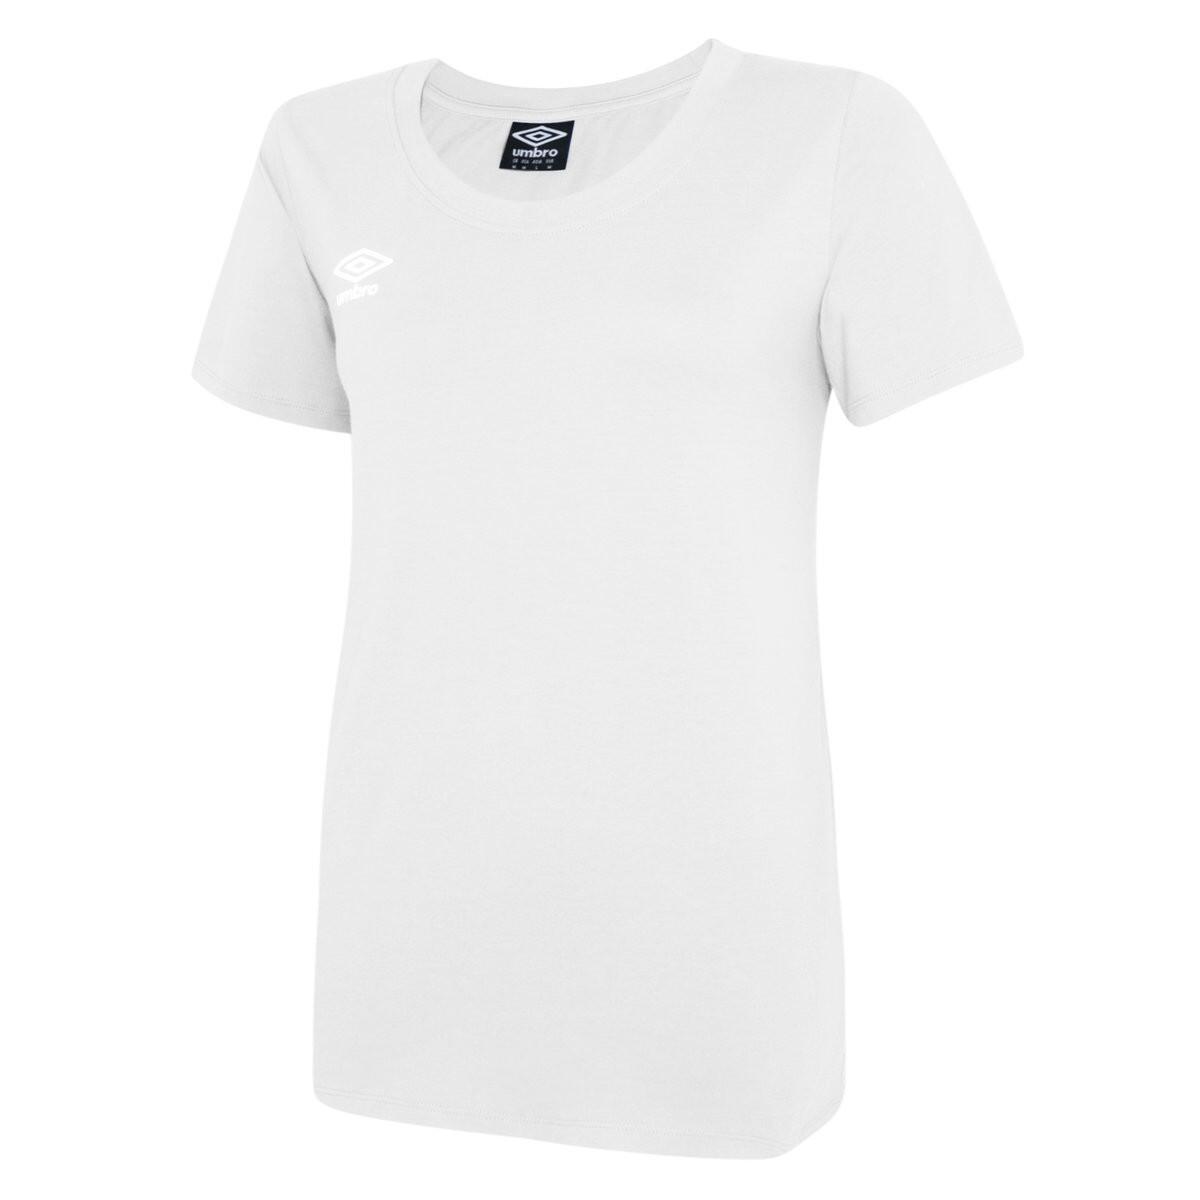 Womens/Ladies Club Leisure TShirt (White/Black) 1/3